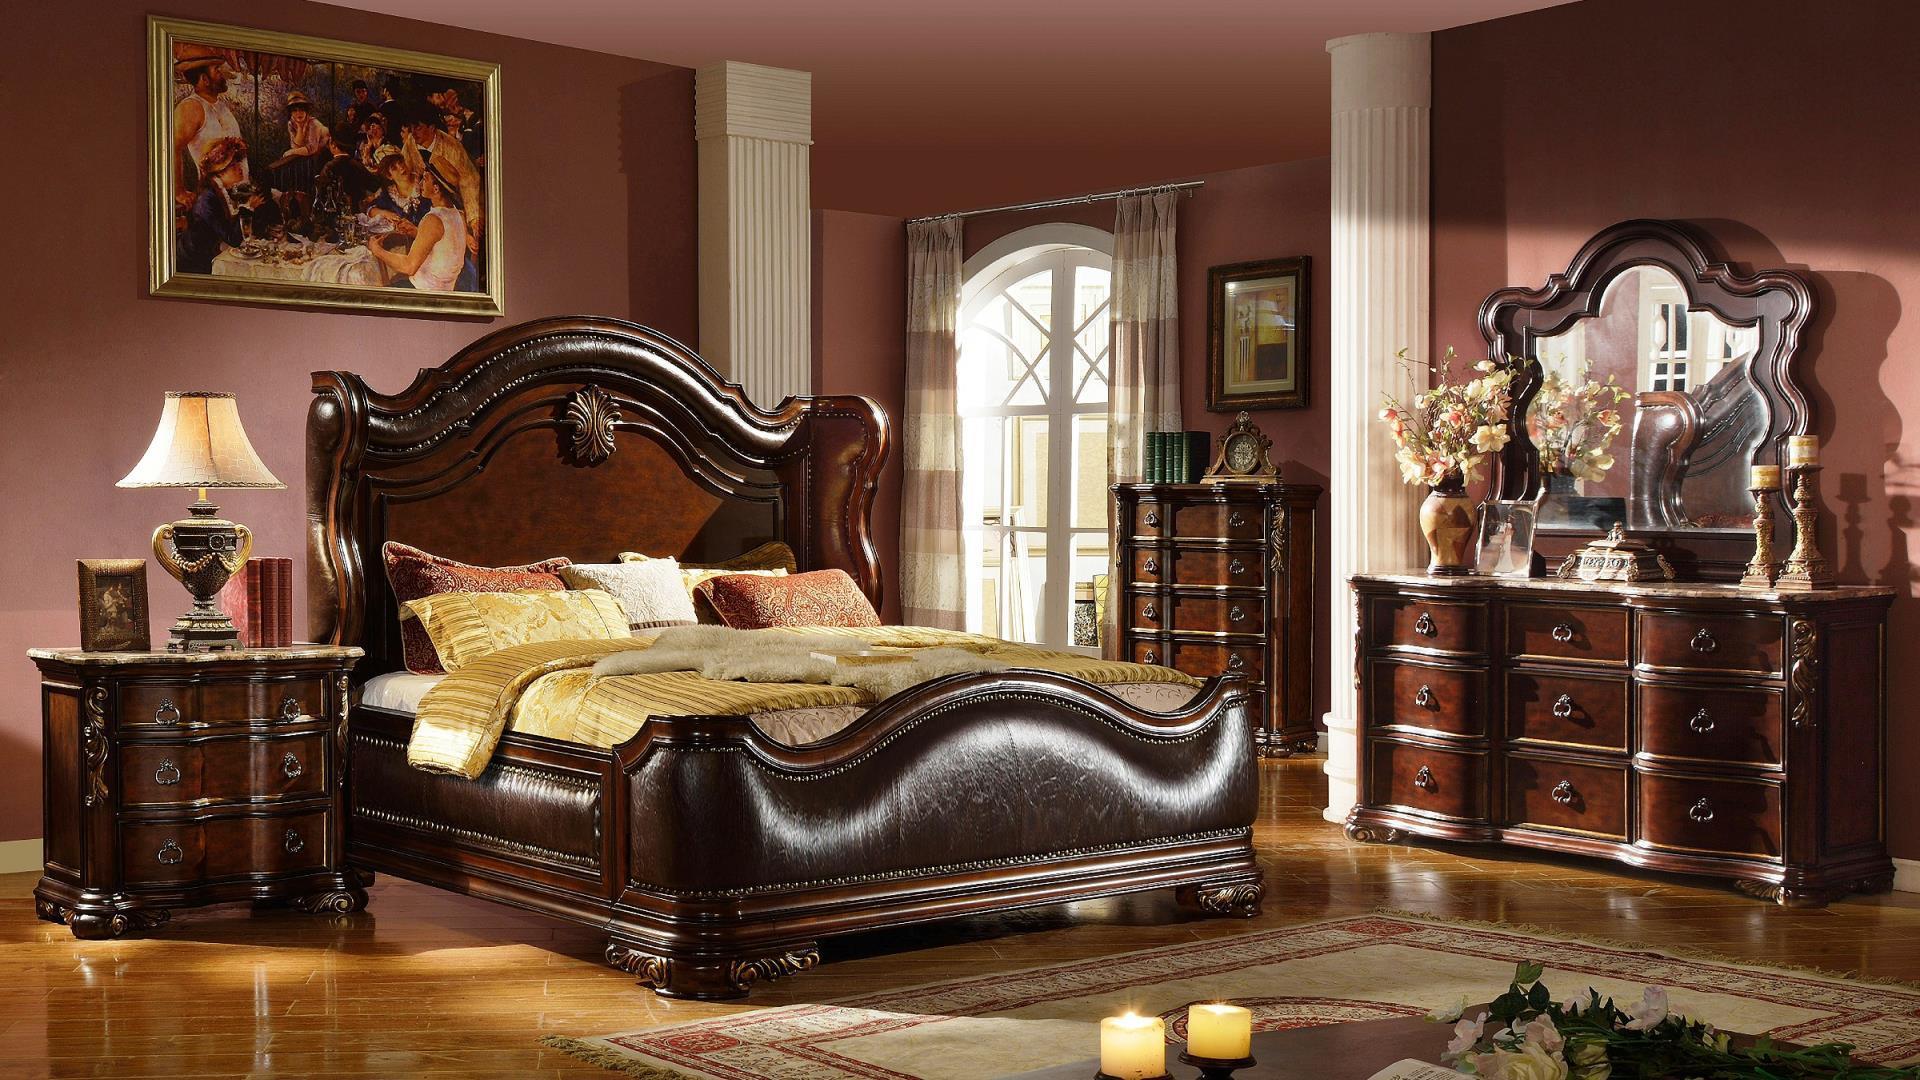 

    
Galaxy Home Furniture BELLA Panel Bed Dark Walnut QB13317561
